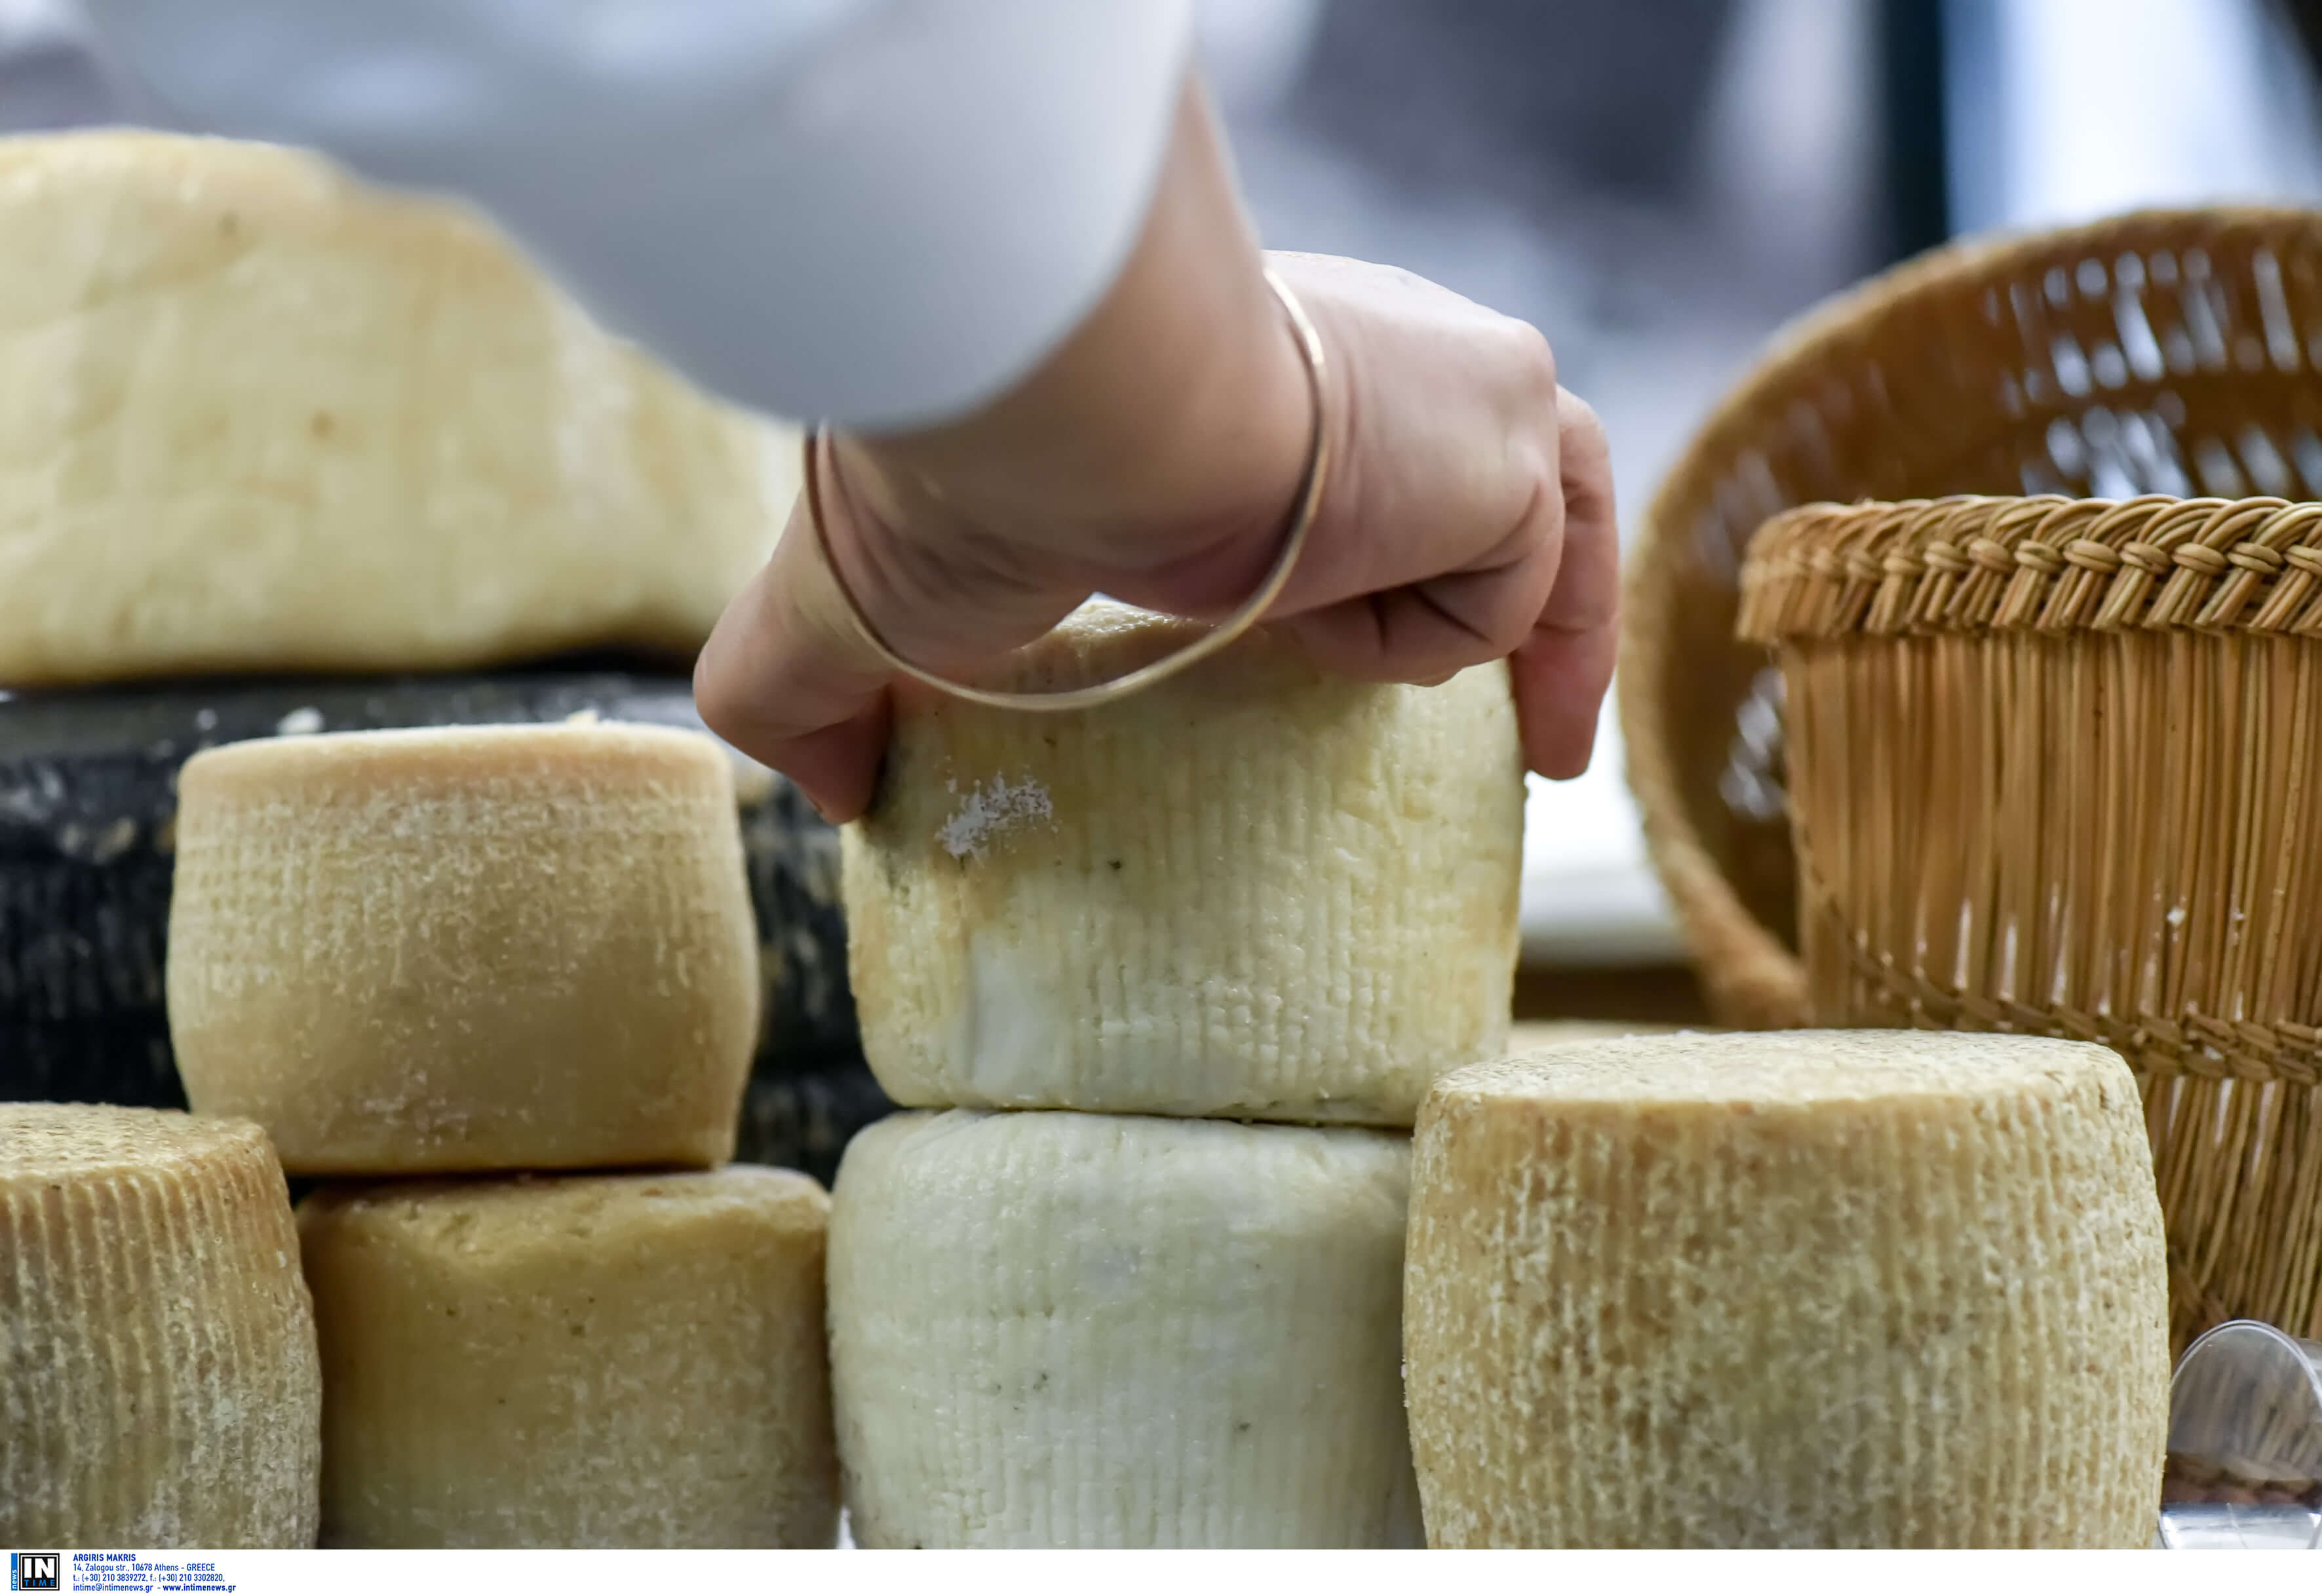 Ορεστιάδα: Ευχάριστα νέα για την υπάλληλο που απολύθηκε από σούπερ μάρκετ επειδή έκοψε σαλάμι και τυρί στην ίδια μηχανή!